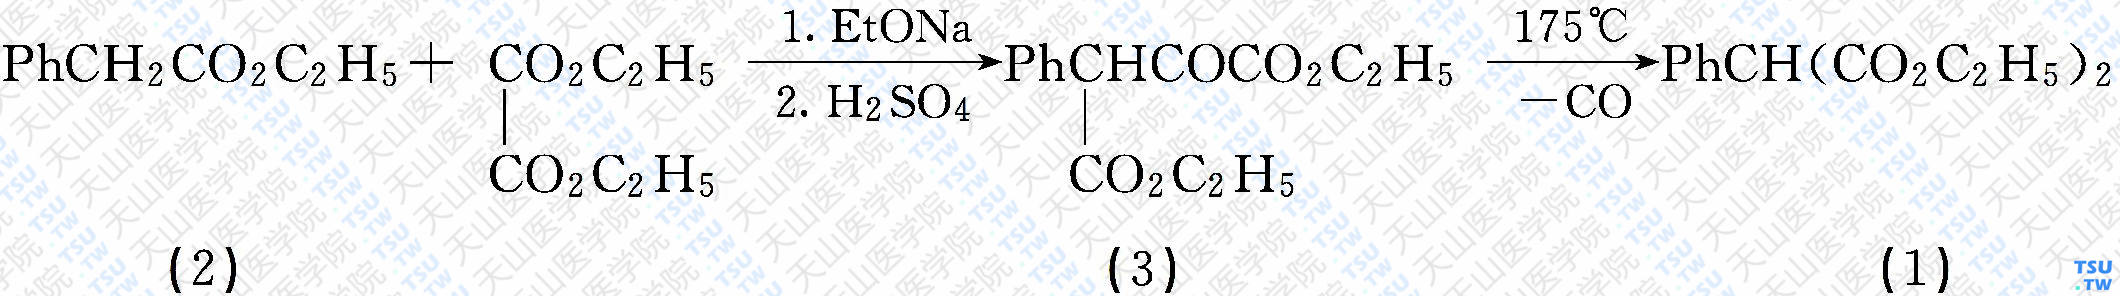 苯基丙二酸二乙酯（分子式：C<sub>13</sub>H<sub>16</sub>O<sub>4</sub>）的合成方法路线及其结构式